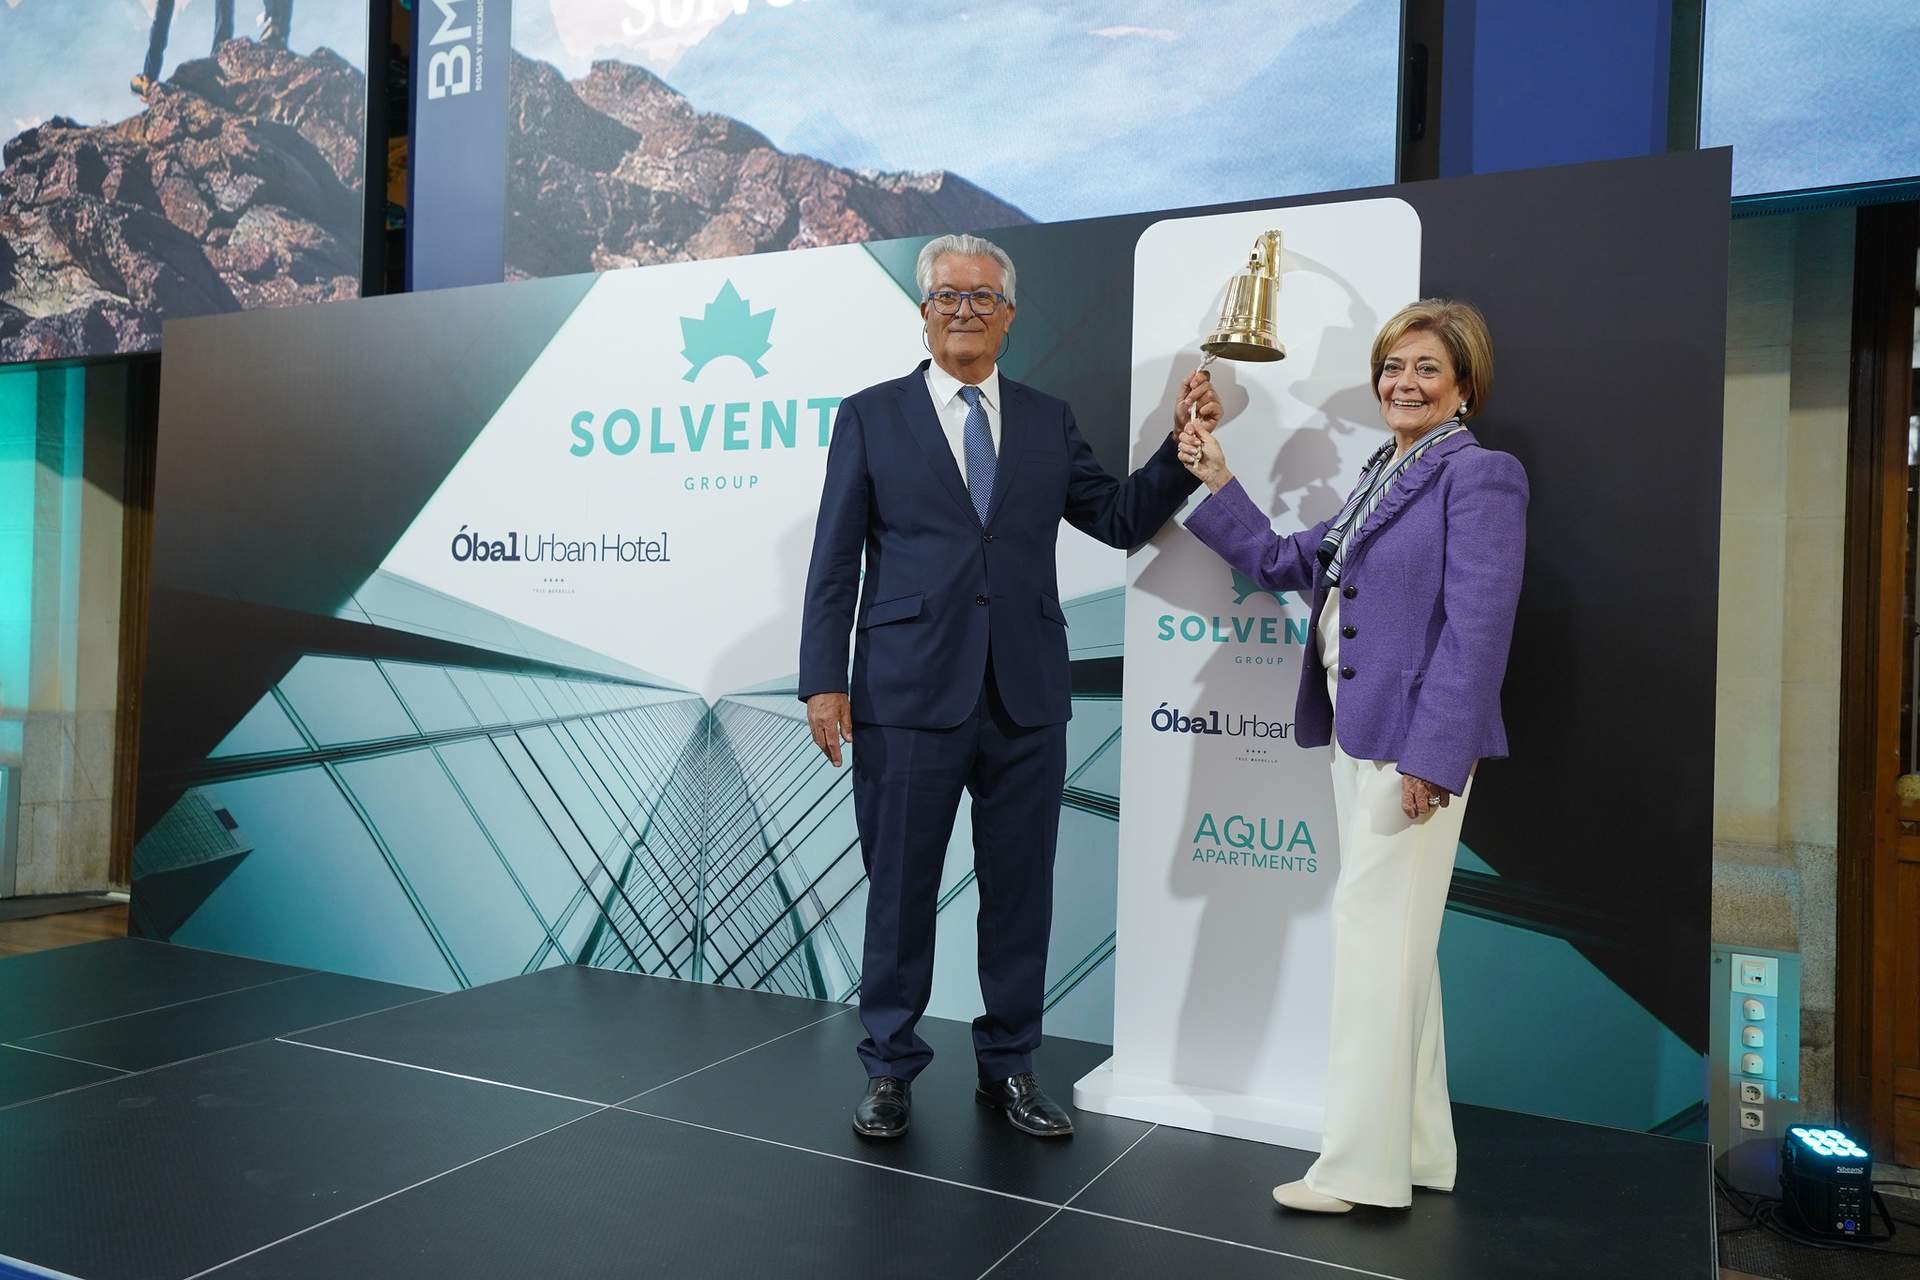 La socimi Solvento estrena su cotización en BME Scaleup con un valor de 64,5 millones de euros